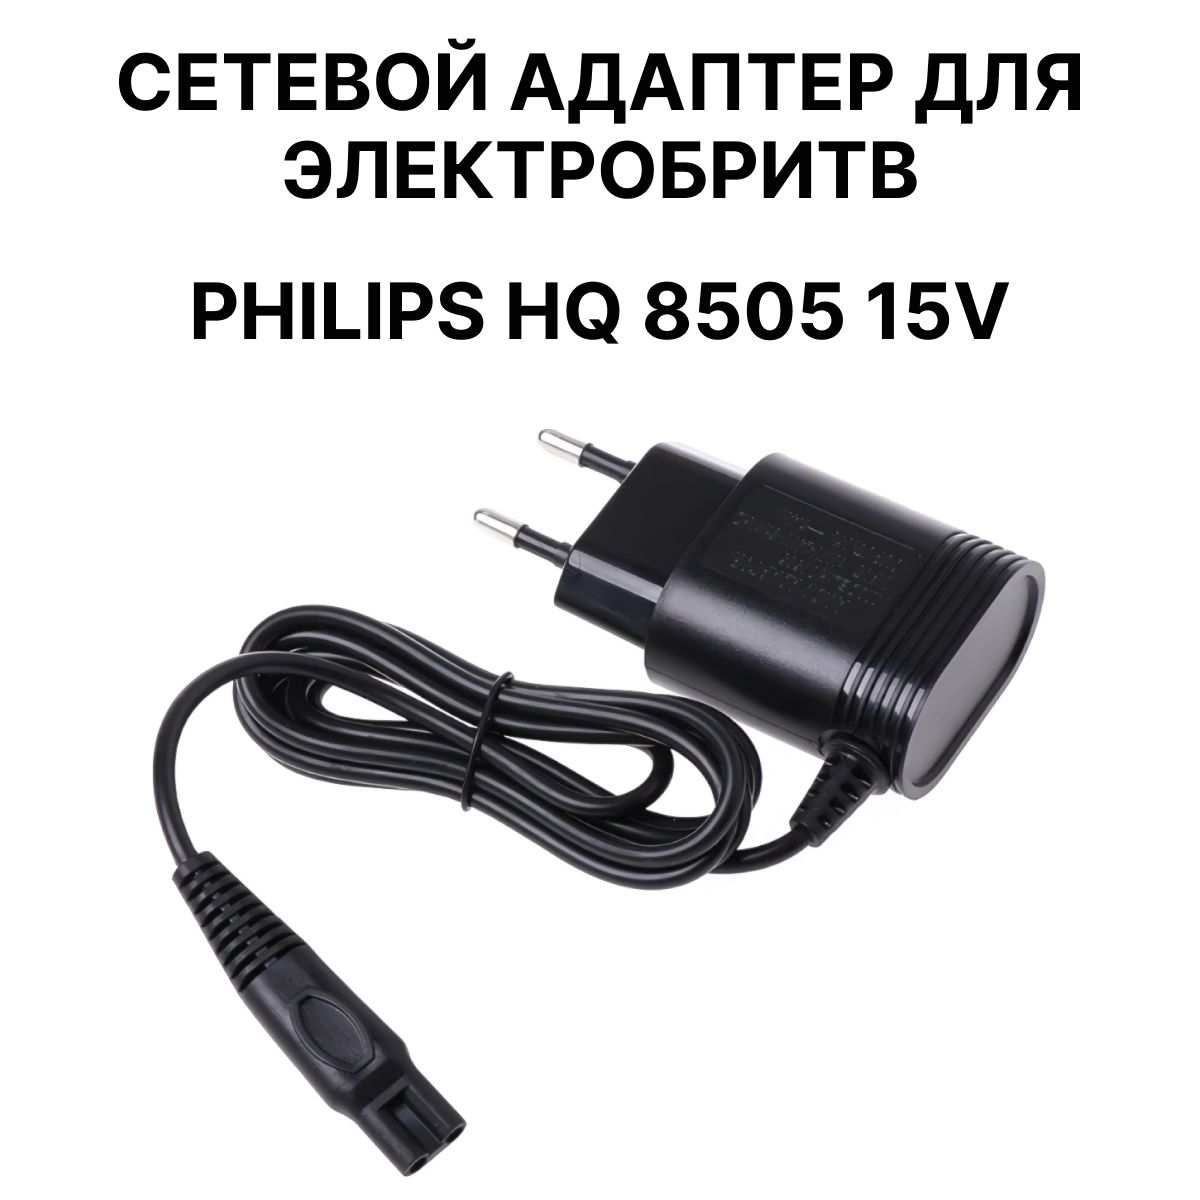 Зарядка для машинка волос. Philips hq8505. Зарядка на бритву Philips hq8505. Philips hq8505 Power Plug. Зарядка Philips 15 v 5.4w.